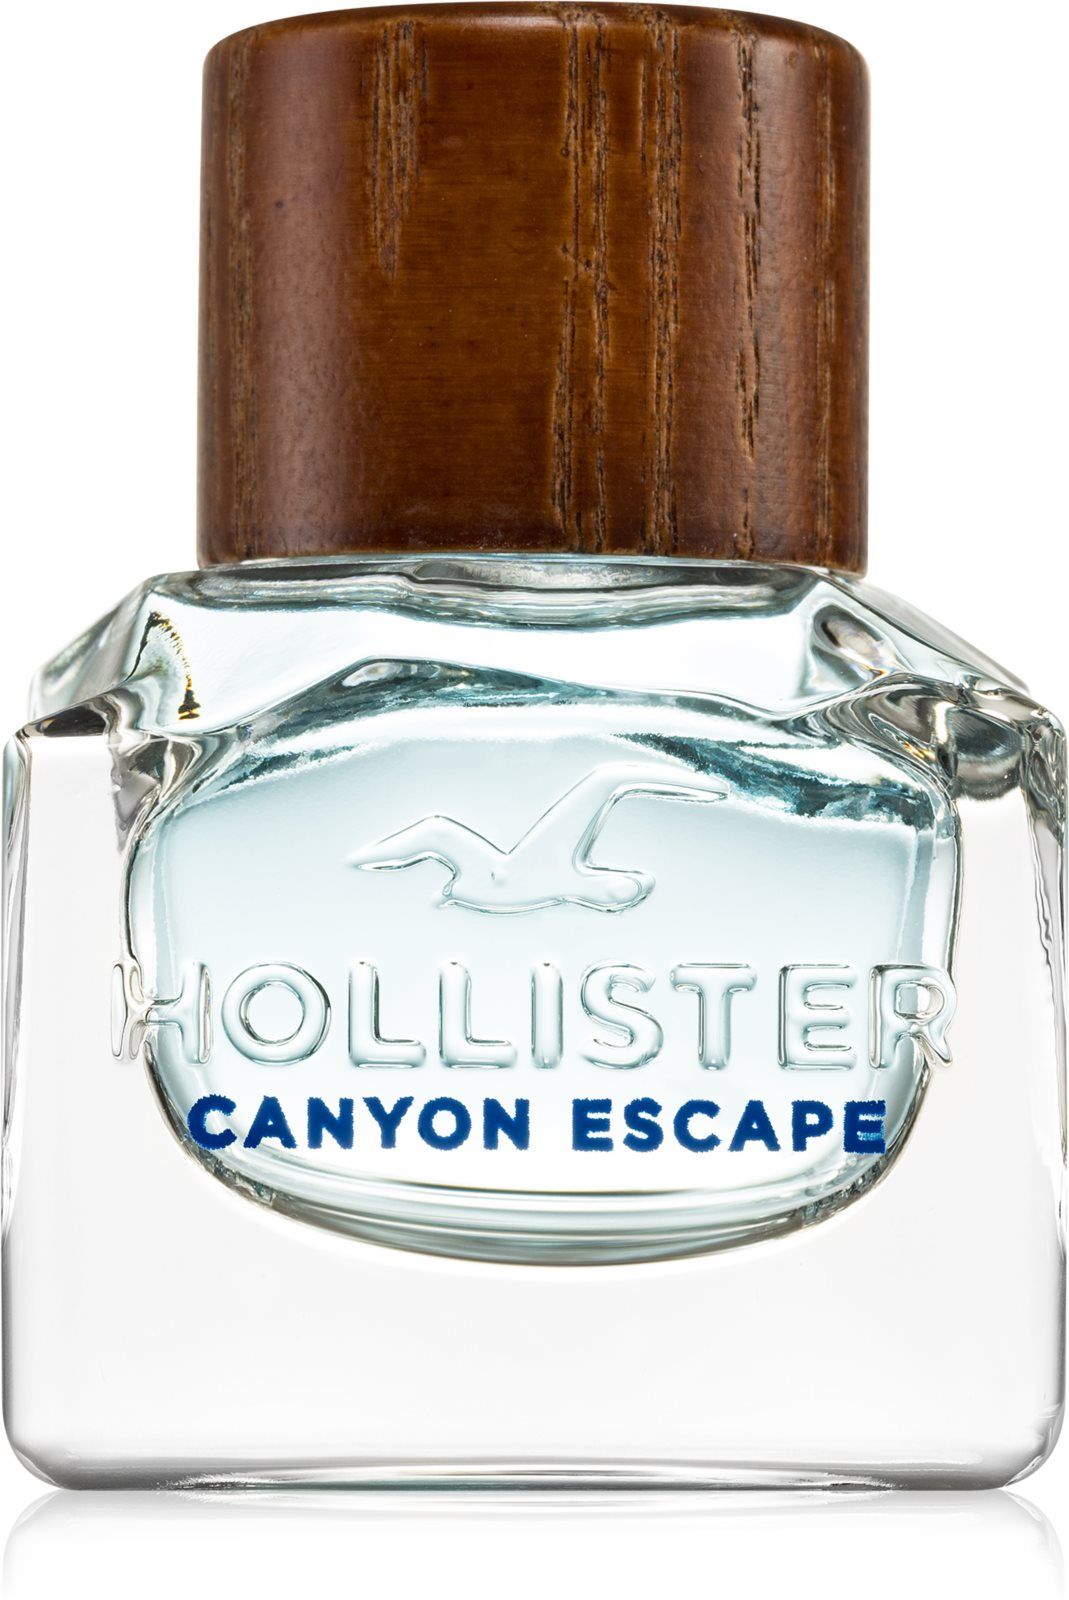 Hollister canyon escape. Hollister Canyon Escape man EDT 50 ml. Hollister Canyon Escape man. Canyon Escape m EDT 30 ml [m].